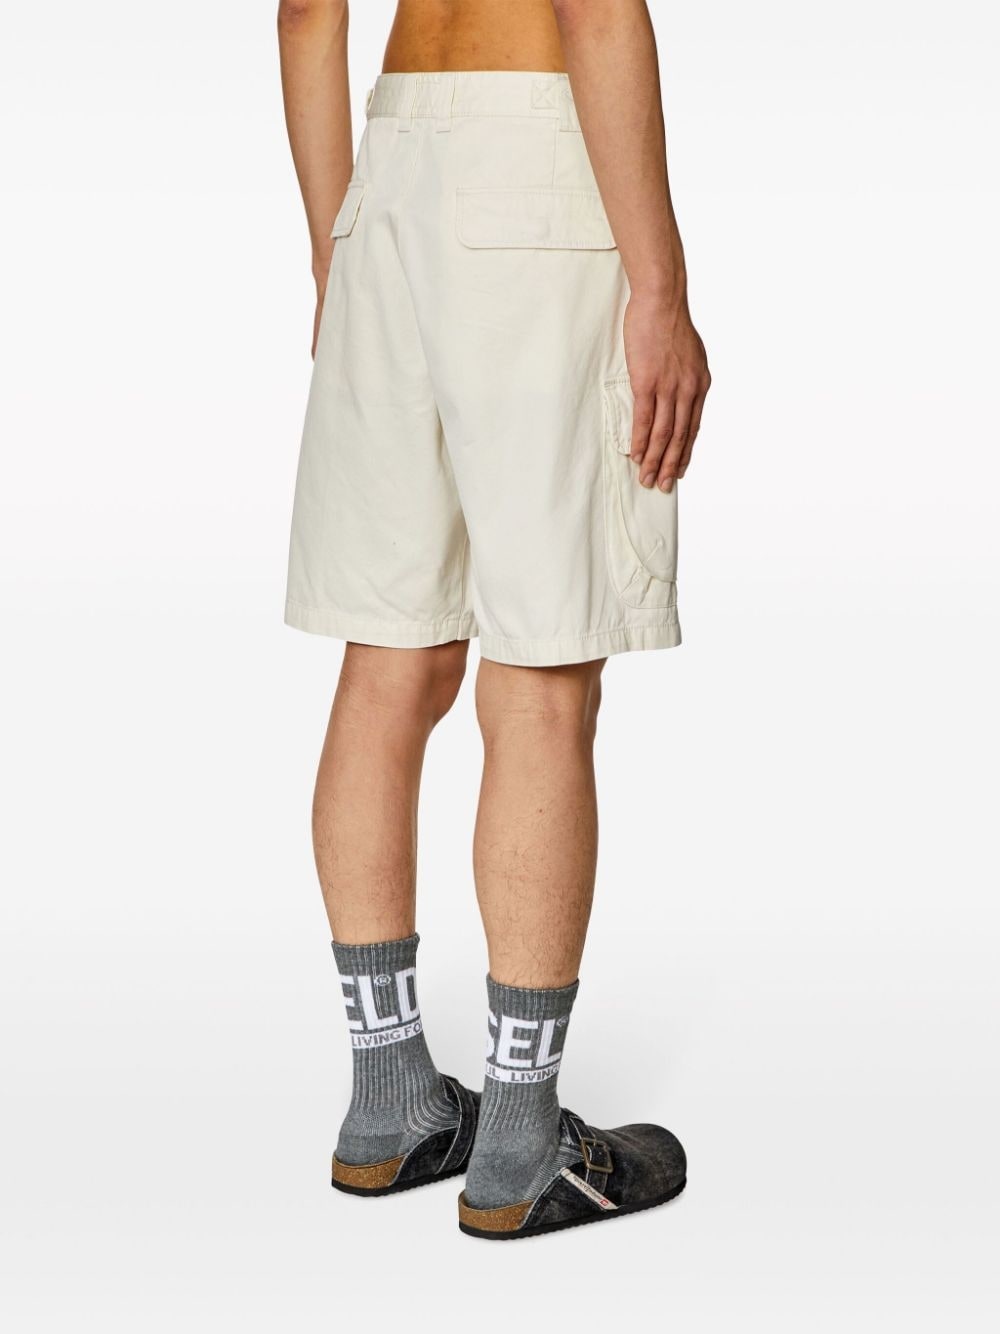 P-Argym cotton shorts - 4